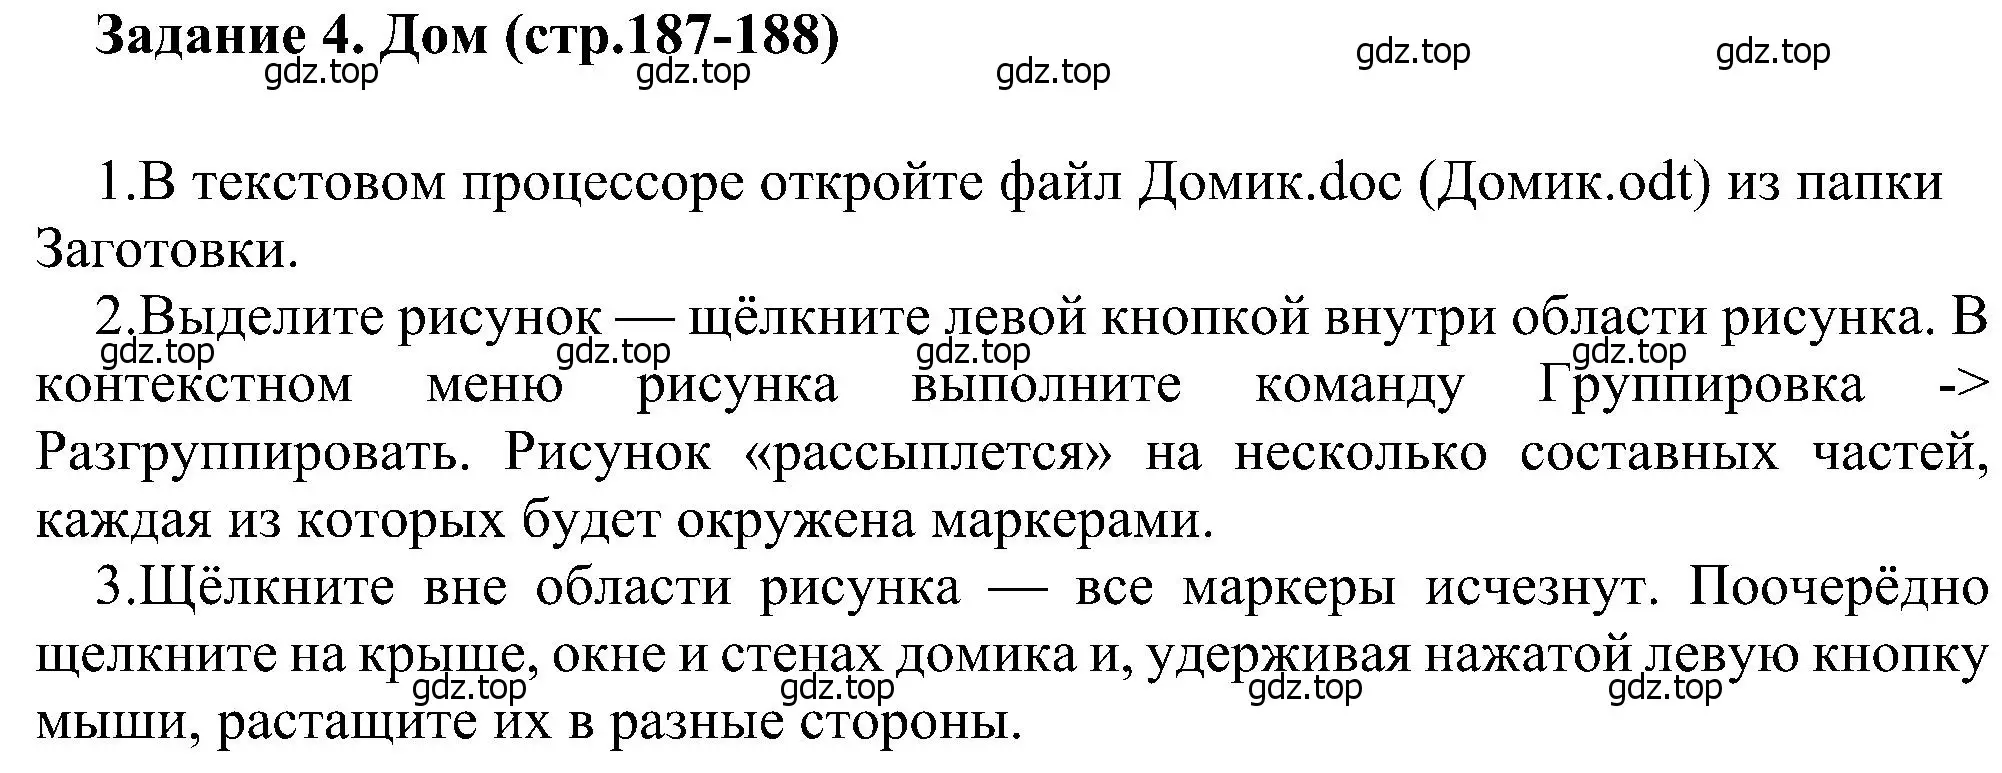 Решение номер 4 (страница 187) гдз по информатике 6 класс Босова, Босова, учебник